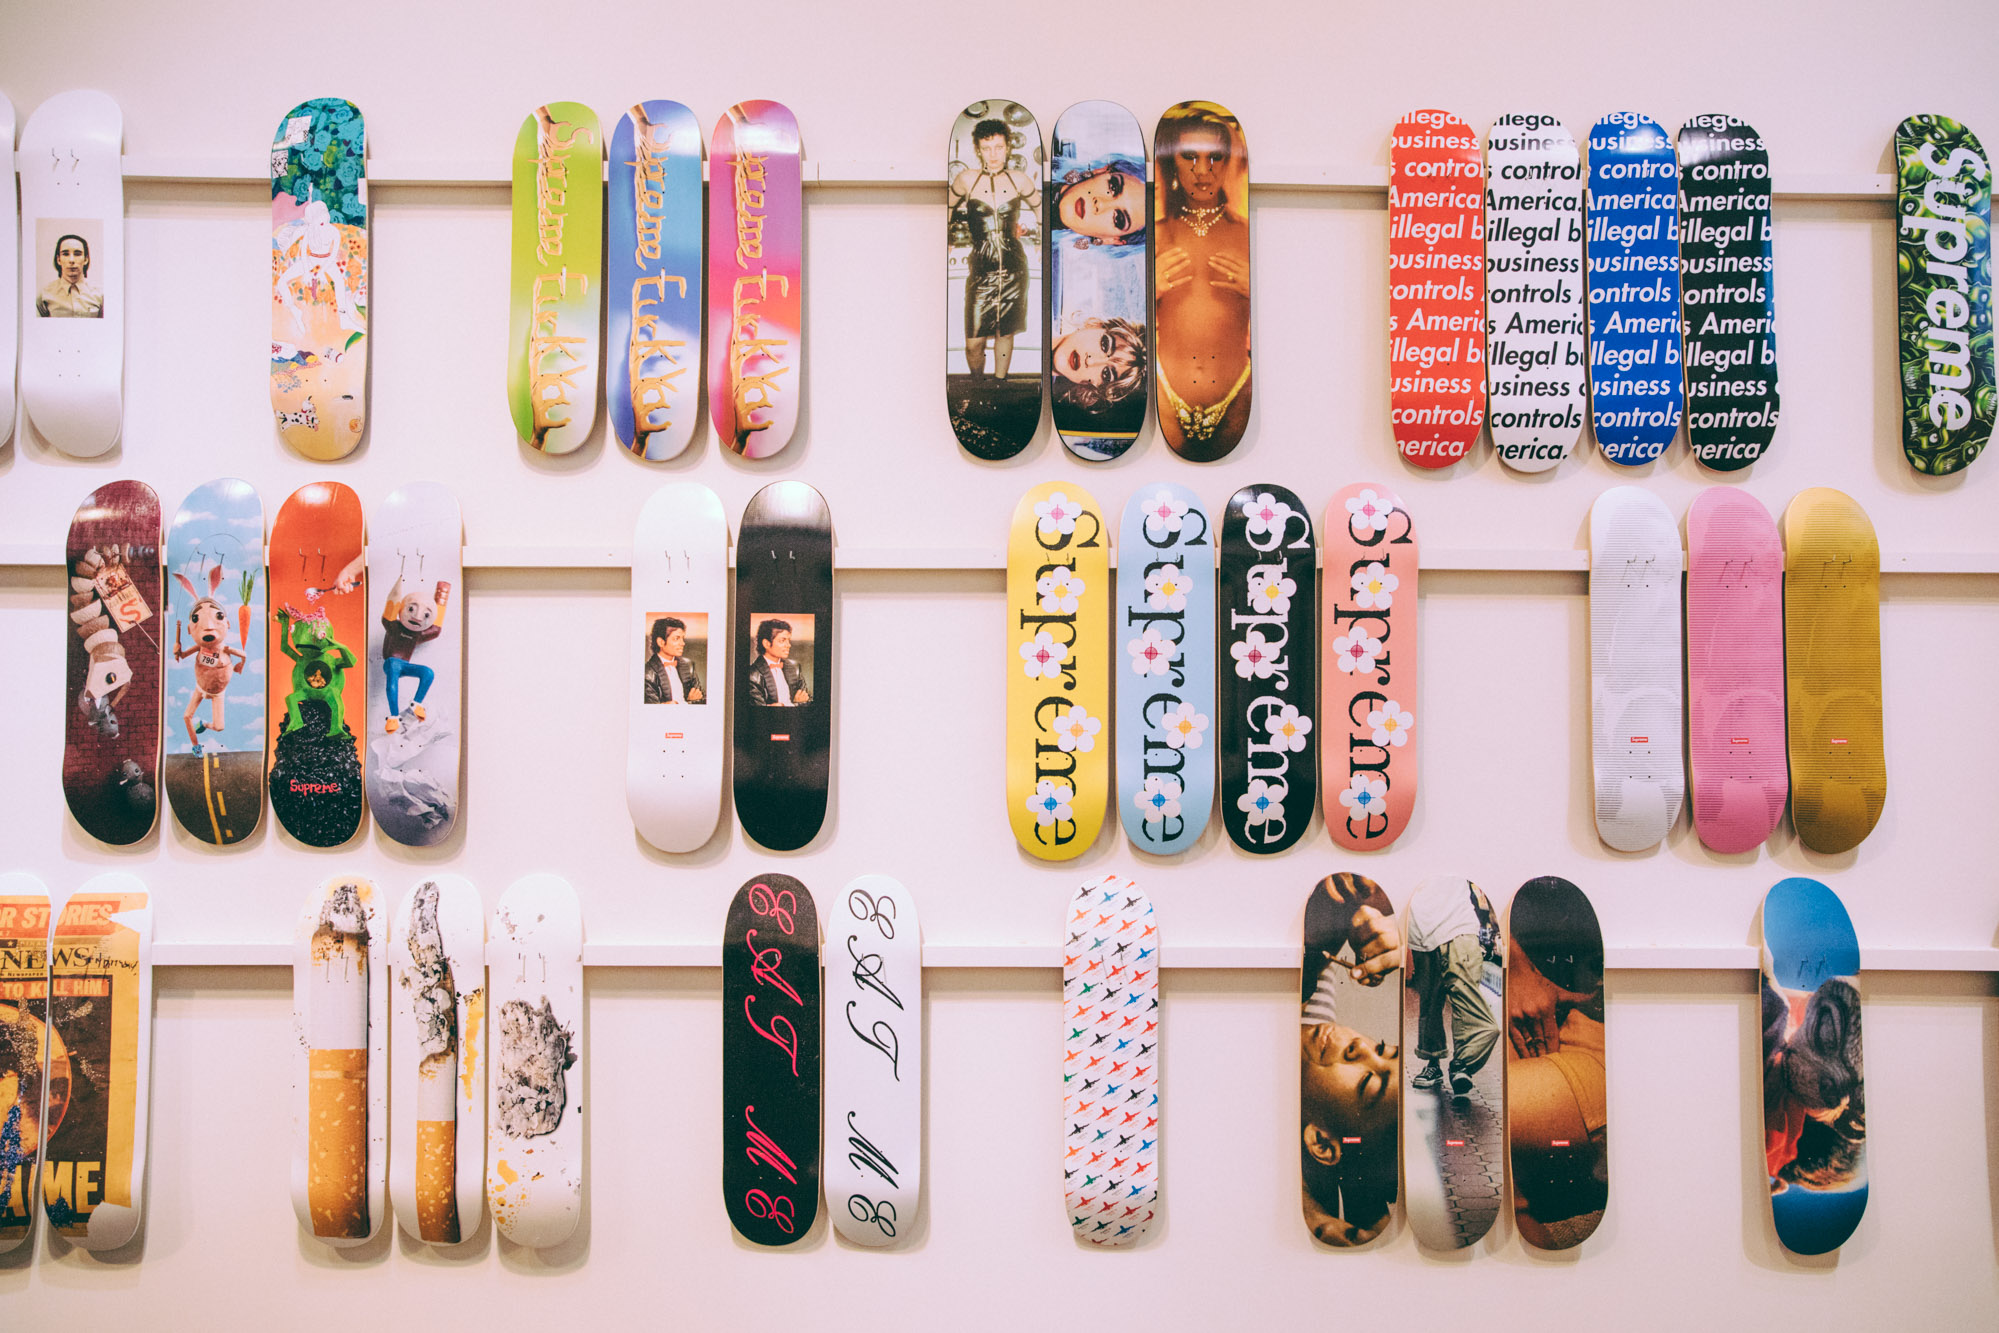 Jeff Koons Set of 3 Supreme Skateboard Decks for Sale